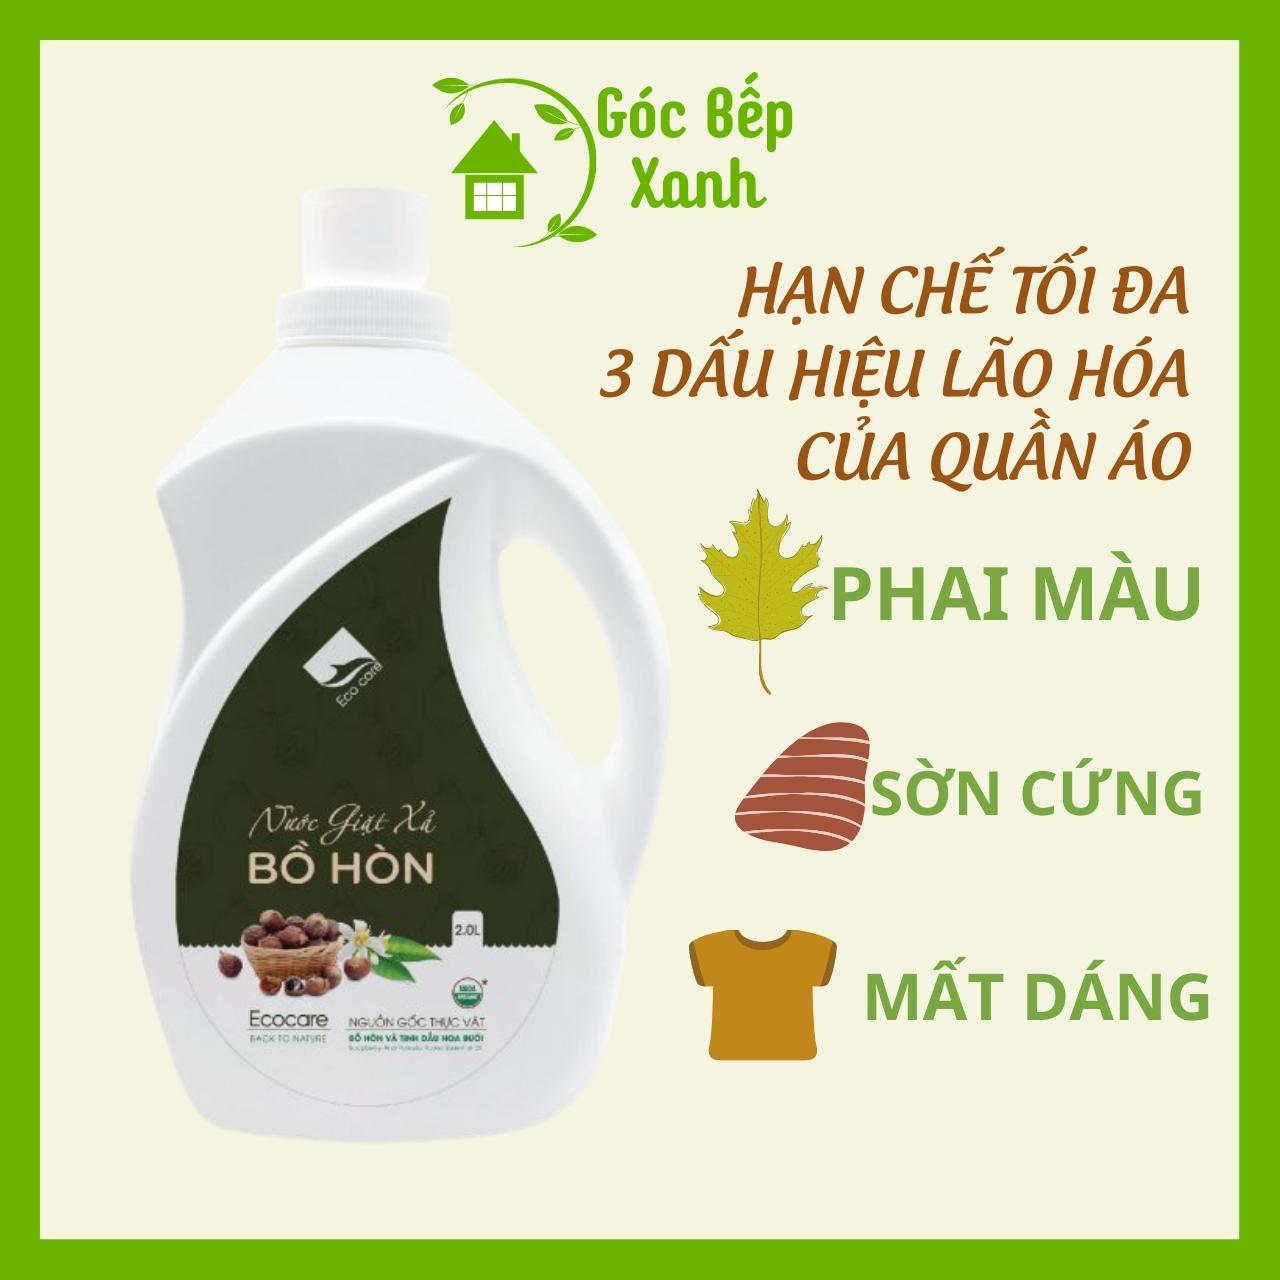 Nước giặt xả hữu cơ Bồ Hòn tinh dầu Hoa Bưởi ECOCARE 2 lít - Bền màu, giữ dáng, làm mềm vải, an toàn da nhạy cảm